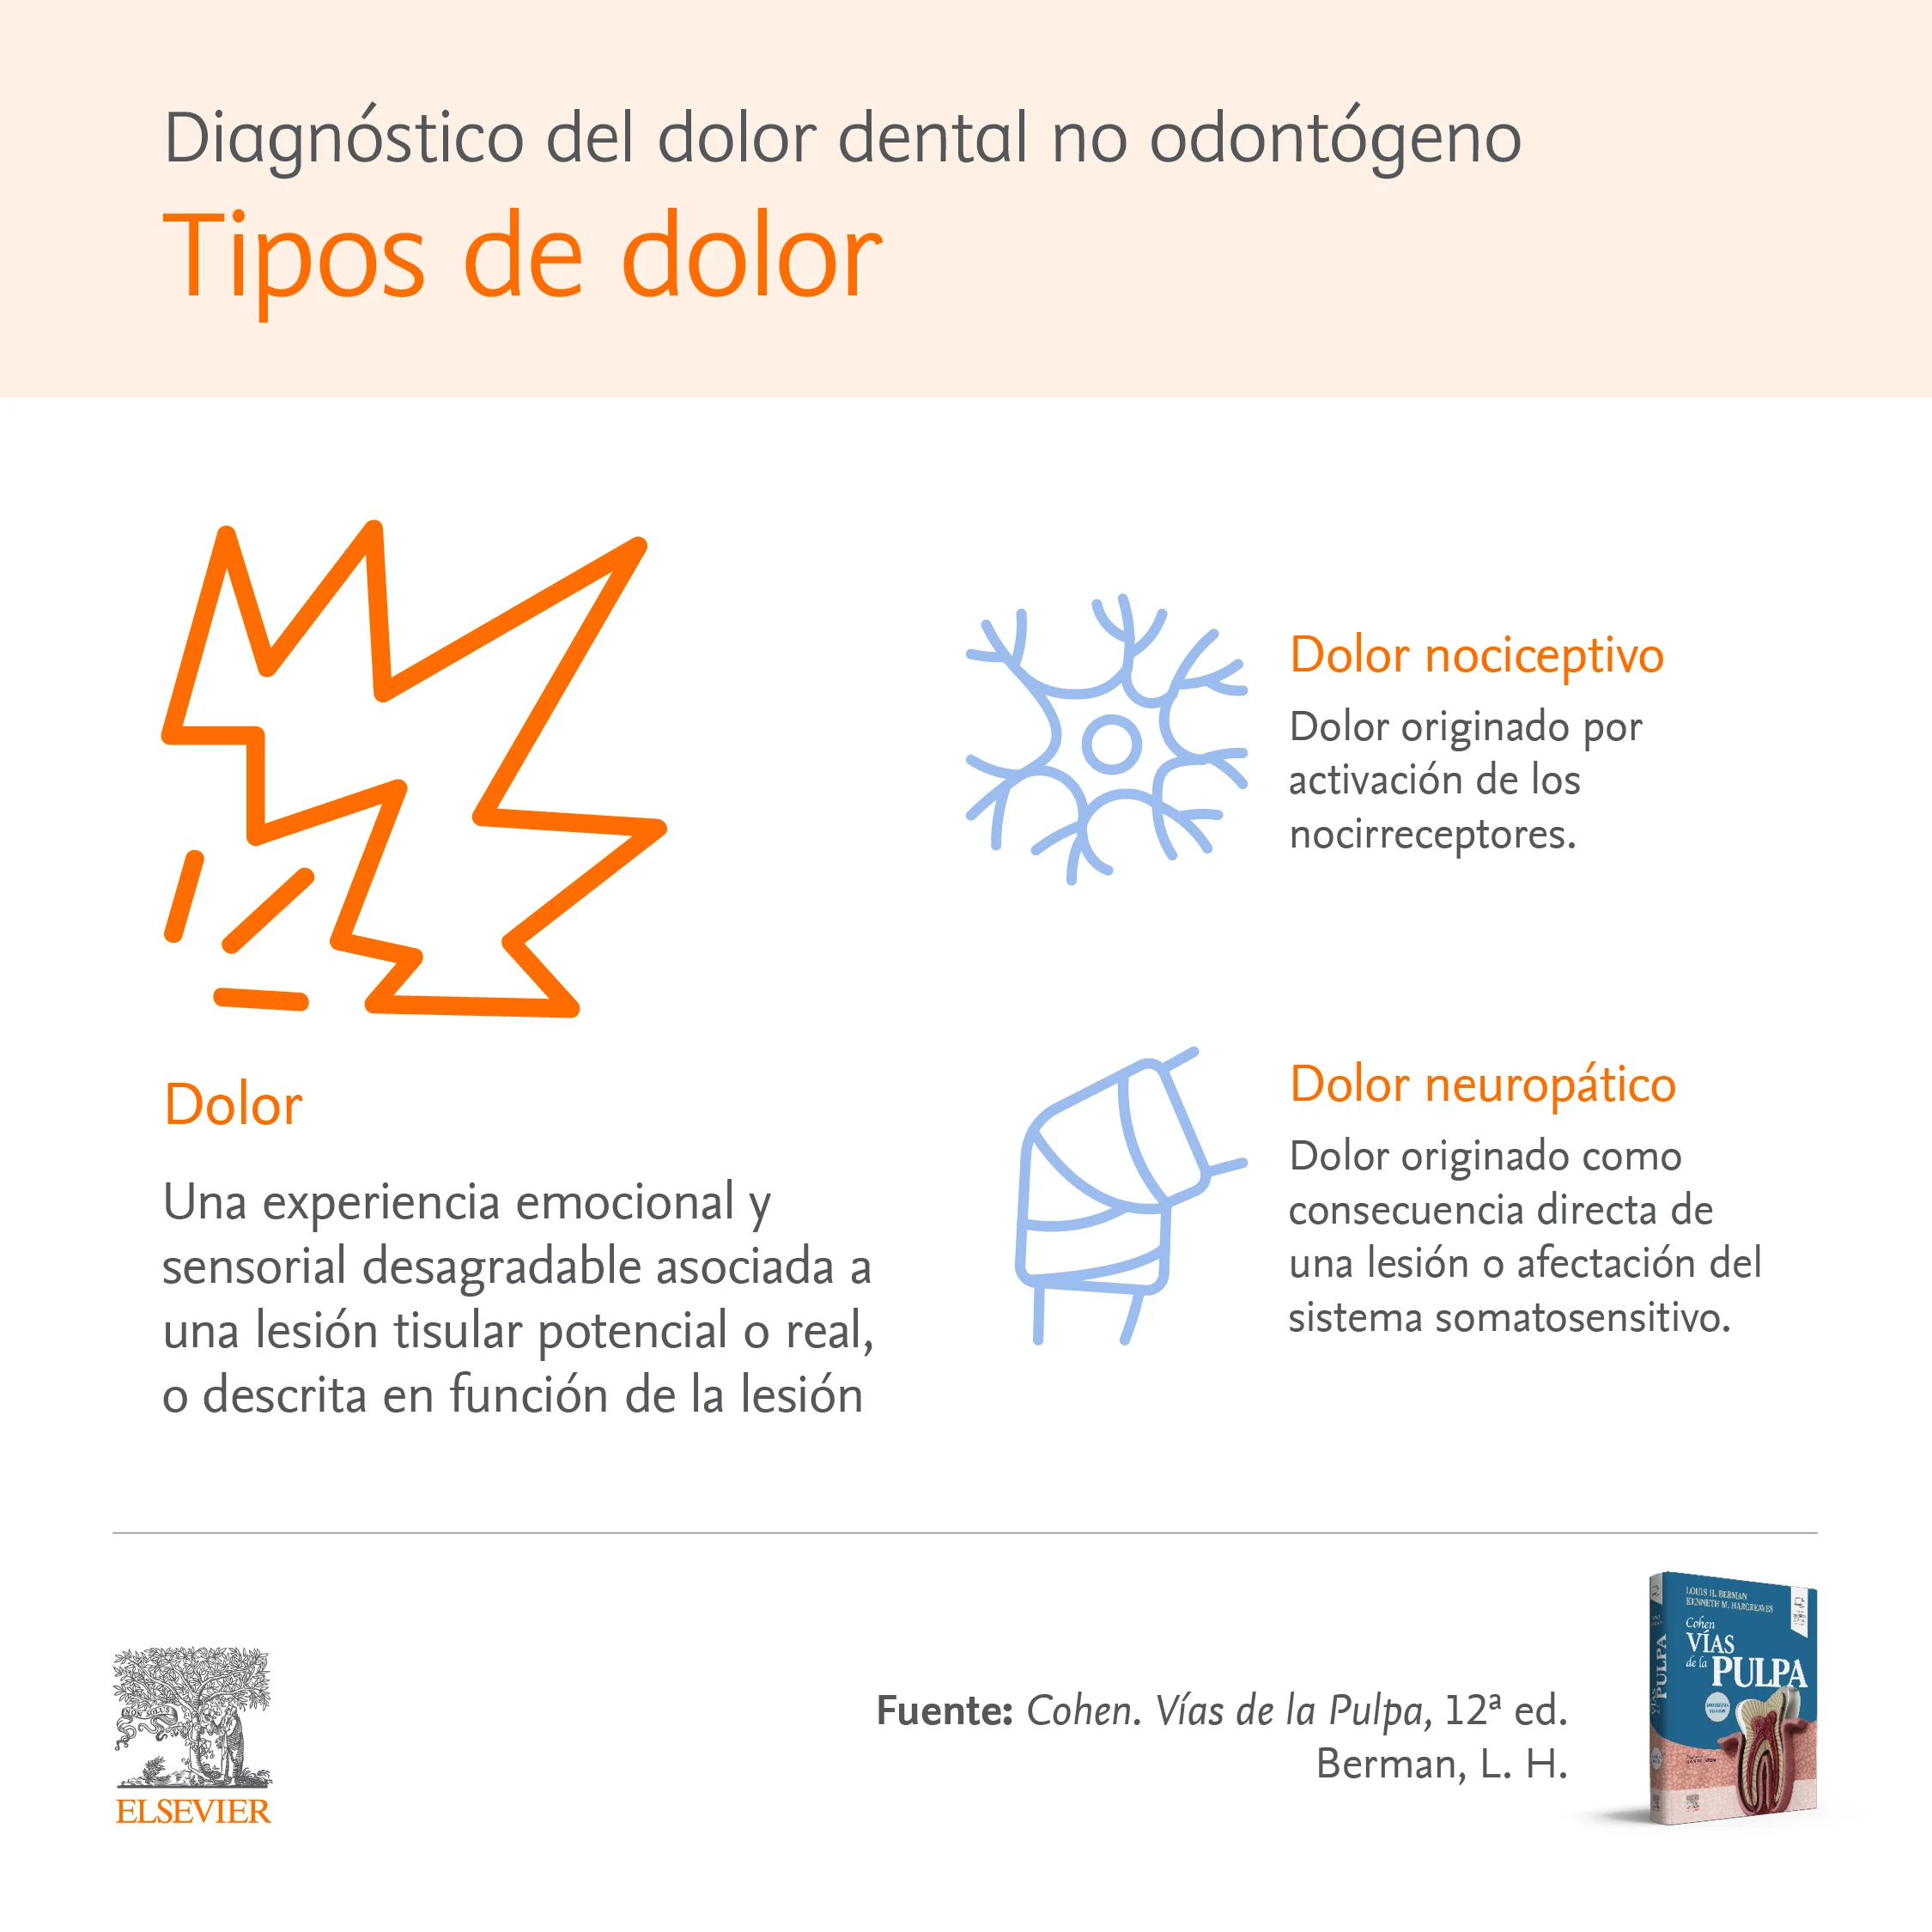 Infographic: Diagnóstico del dolor dental no odontógeno